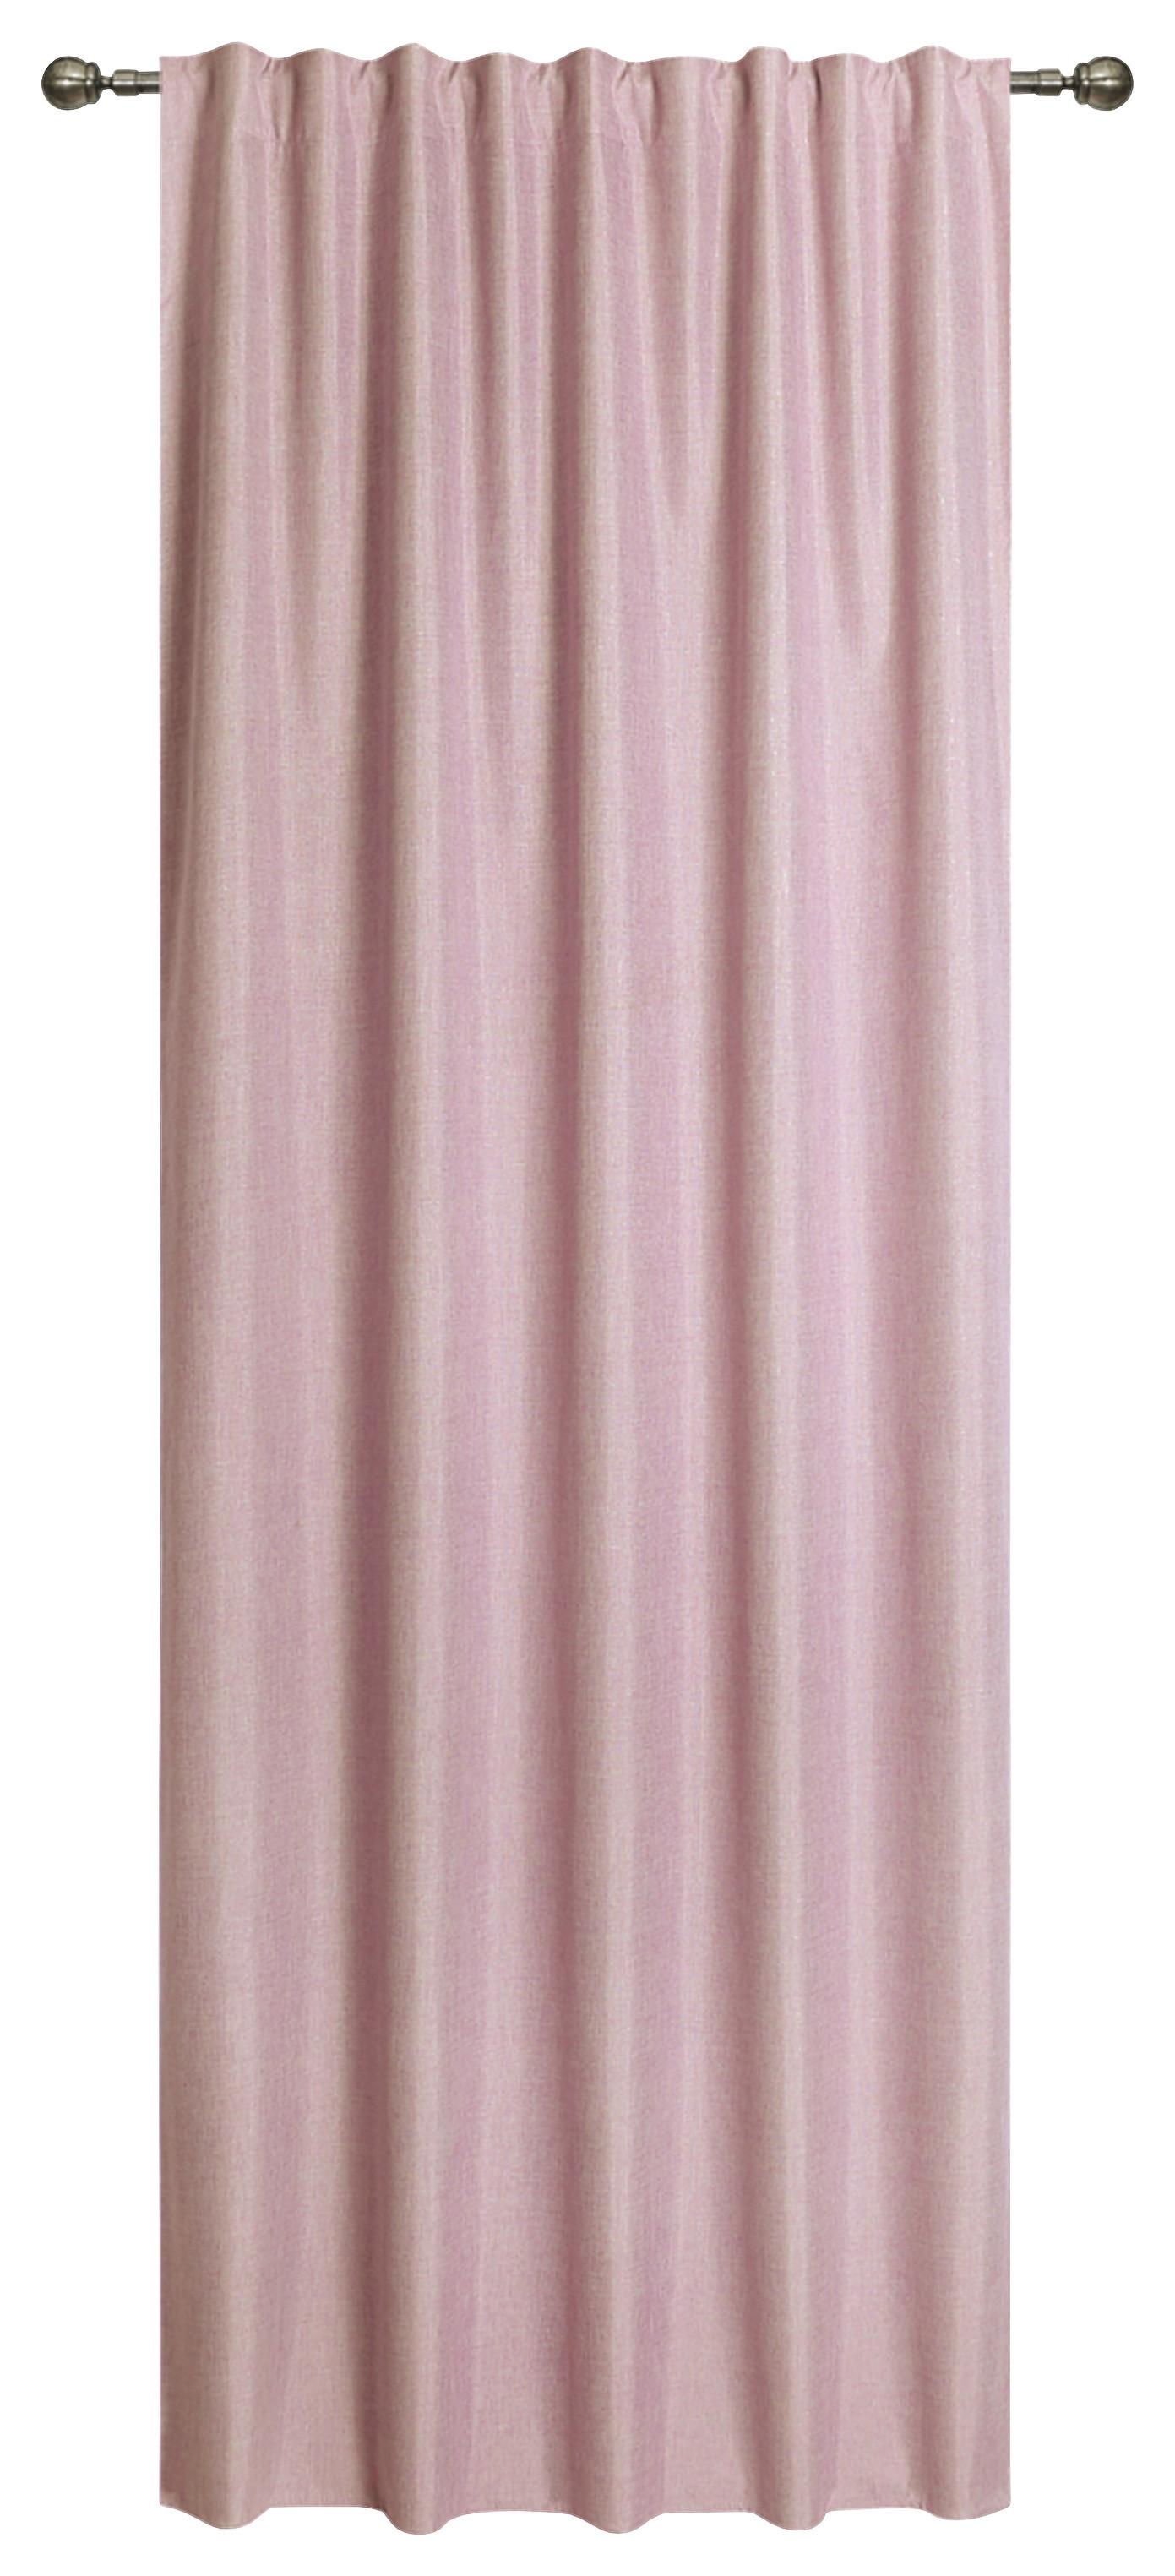 Vorhang mit Band Ohio 140x245 cm Rosa - Rosa, ROMANTIK / LANDHAUS, Textil (140/245cm) - James Wood